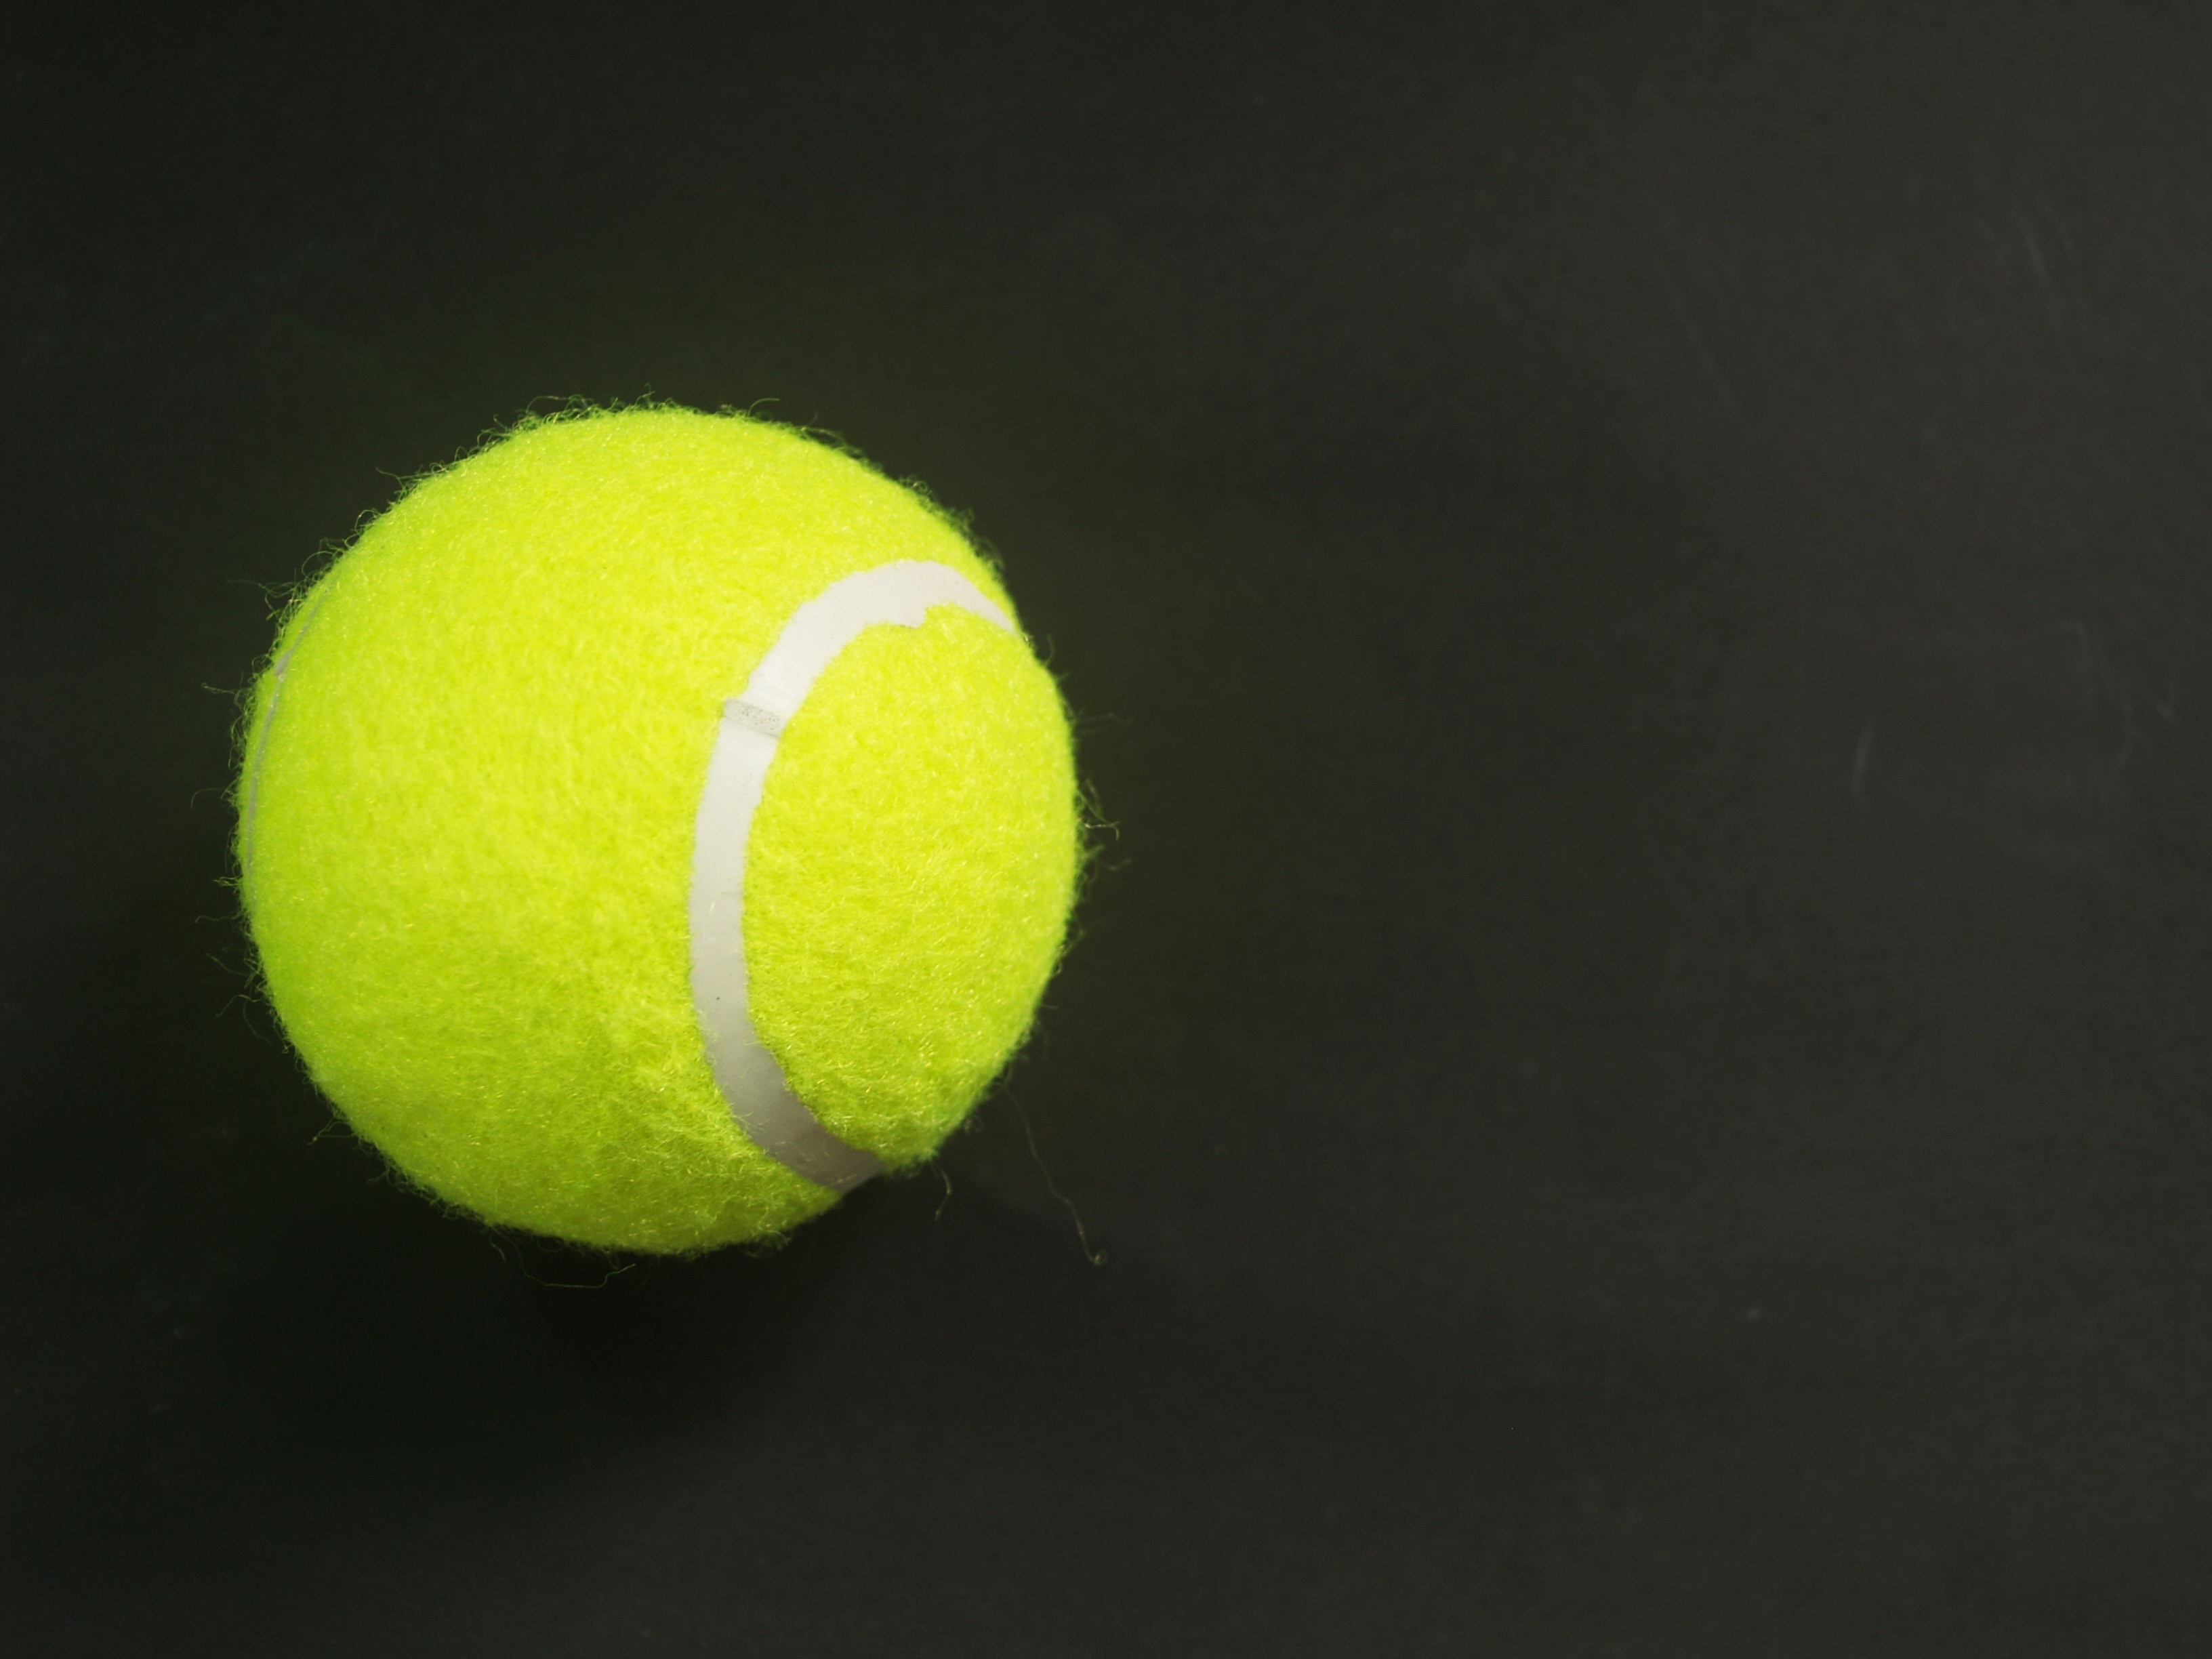 yellow green tennis ball